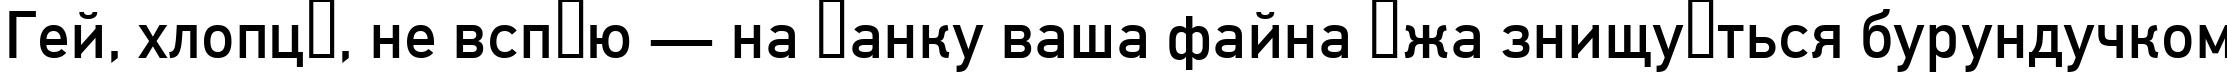 Пример написания шрифтом DinC текста на украинском